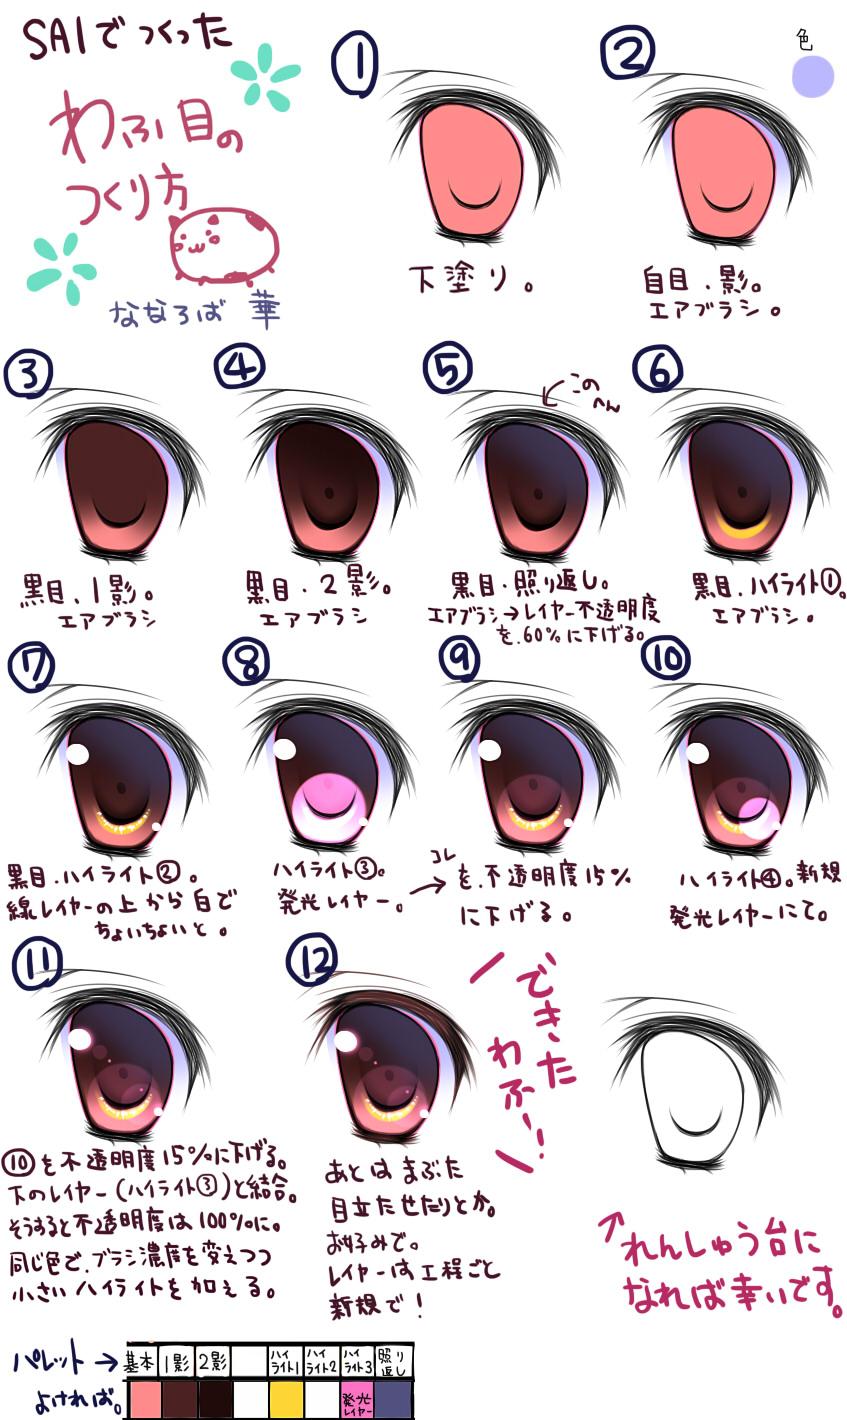 Туториал по рисованию старых аниме глаз